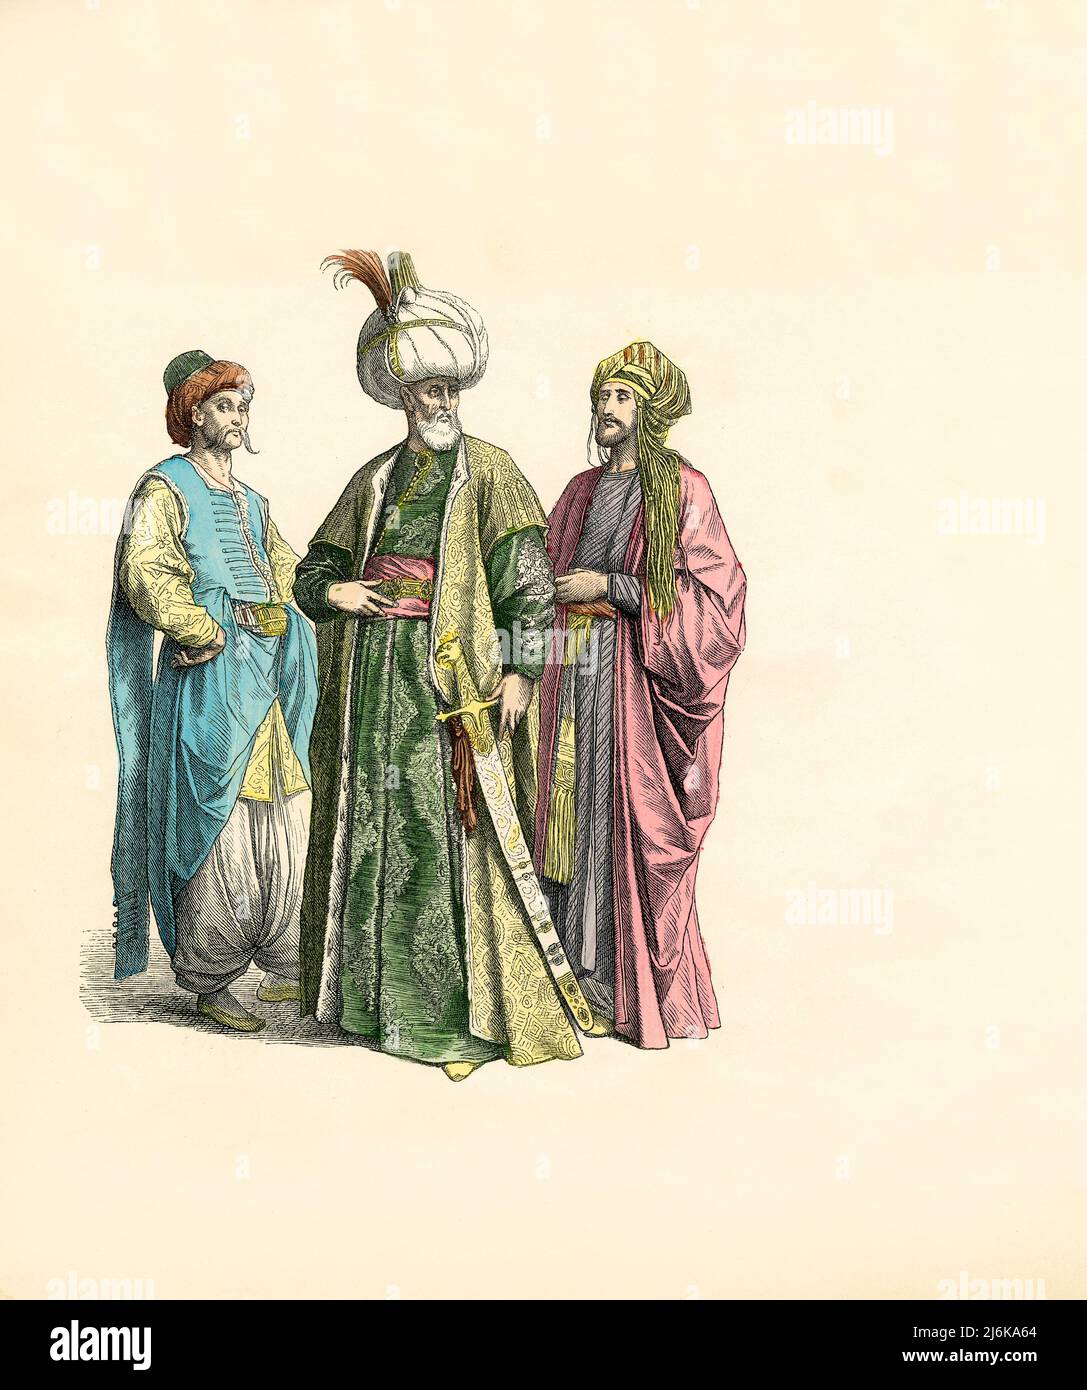 Fonctionnaire turc et deux nobles, Illustration, l'Histoire du costume, Braun & Schneider, Munich, Allemagne, 1861-1880 Banque D'Images